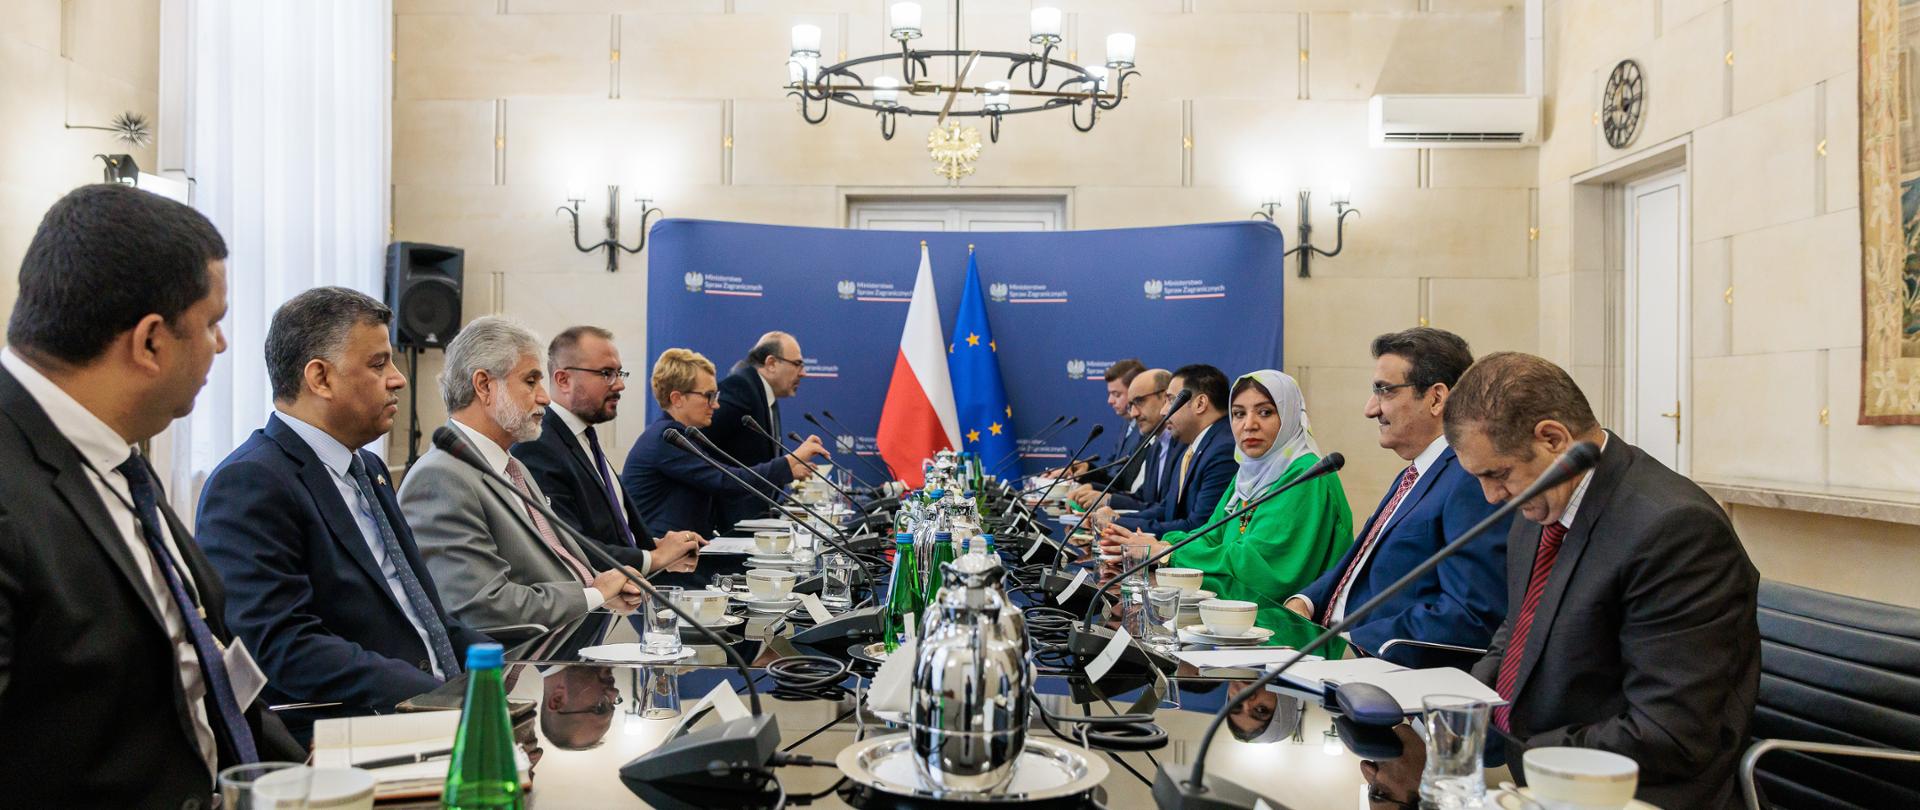 Wiceminister Jabłoński spotkał się z przedstawicielami korpusu dyplomatycznego państw arabskich i Iranu